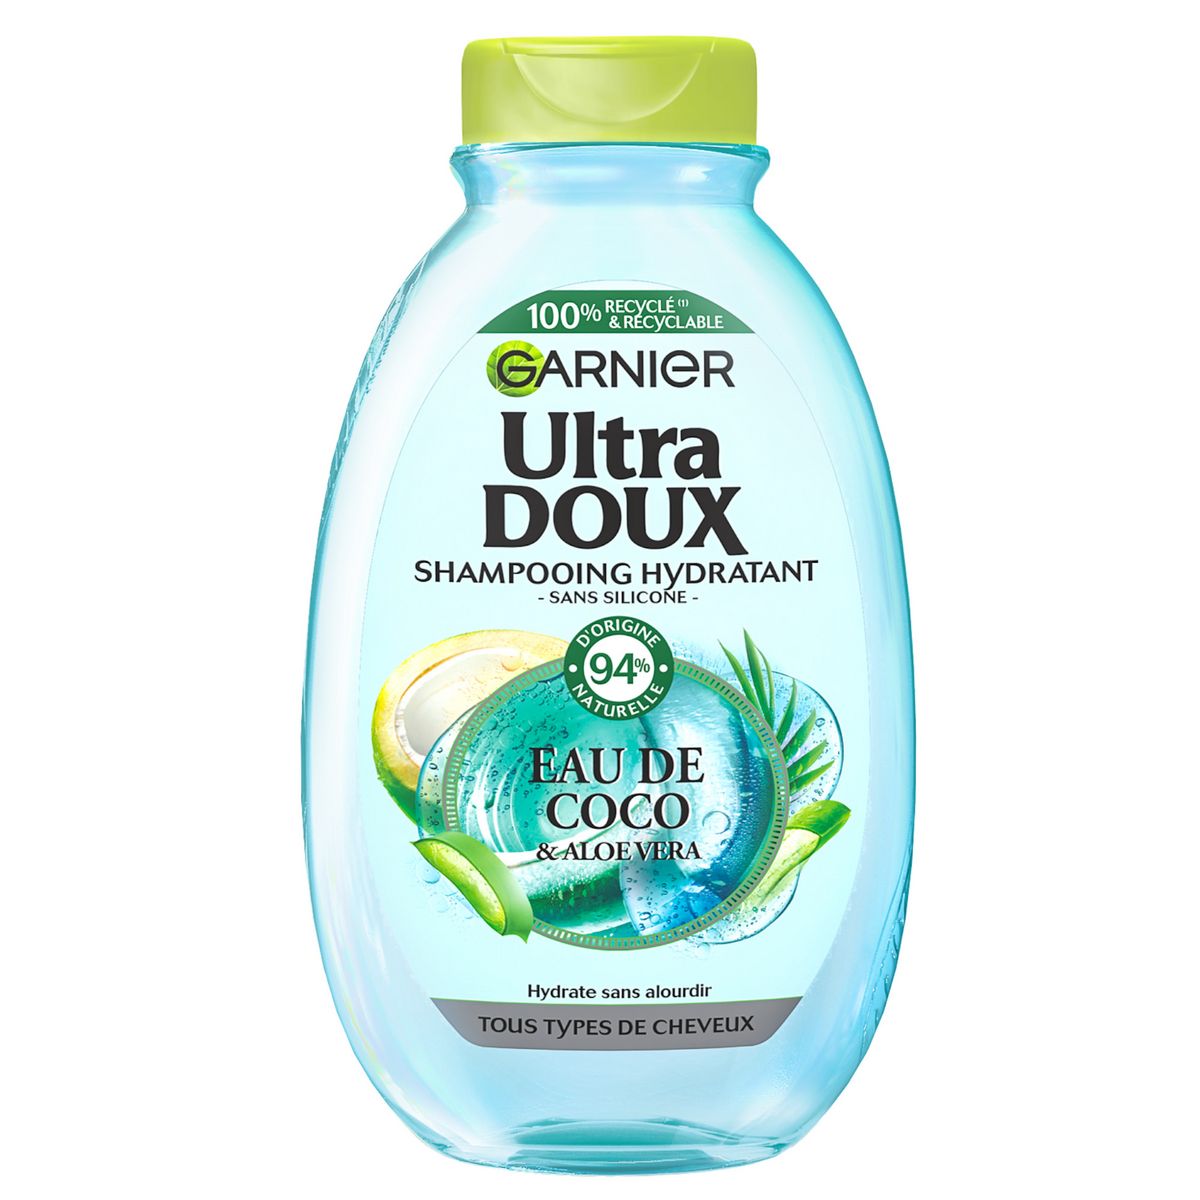 GARNIER ULTRA DOUX Shampooing hydratant eau de coco et aloe vera tous types de cheveux 300ml